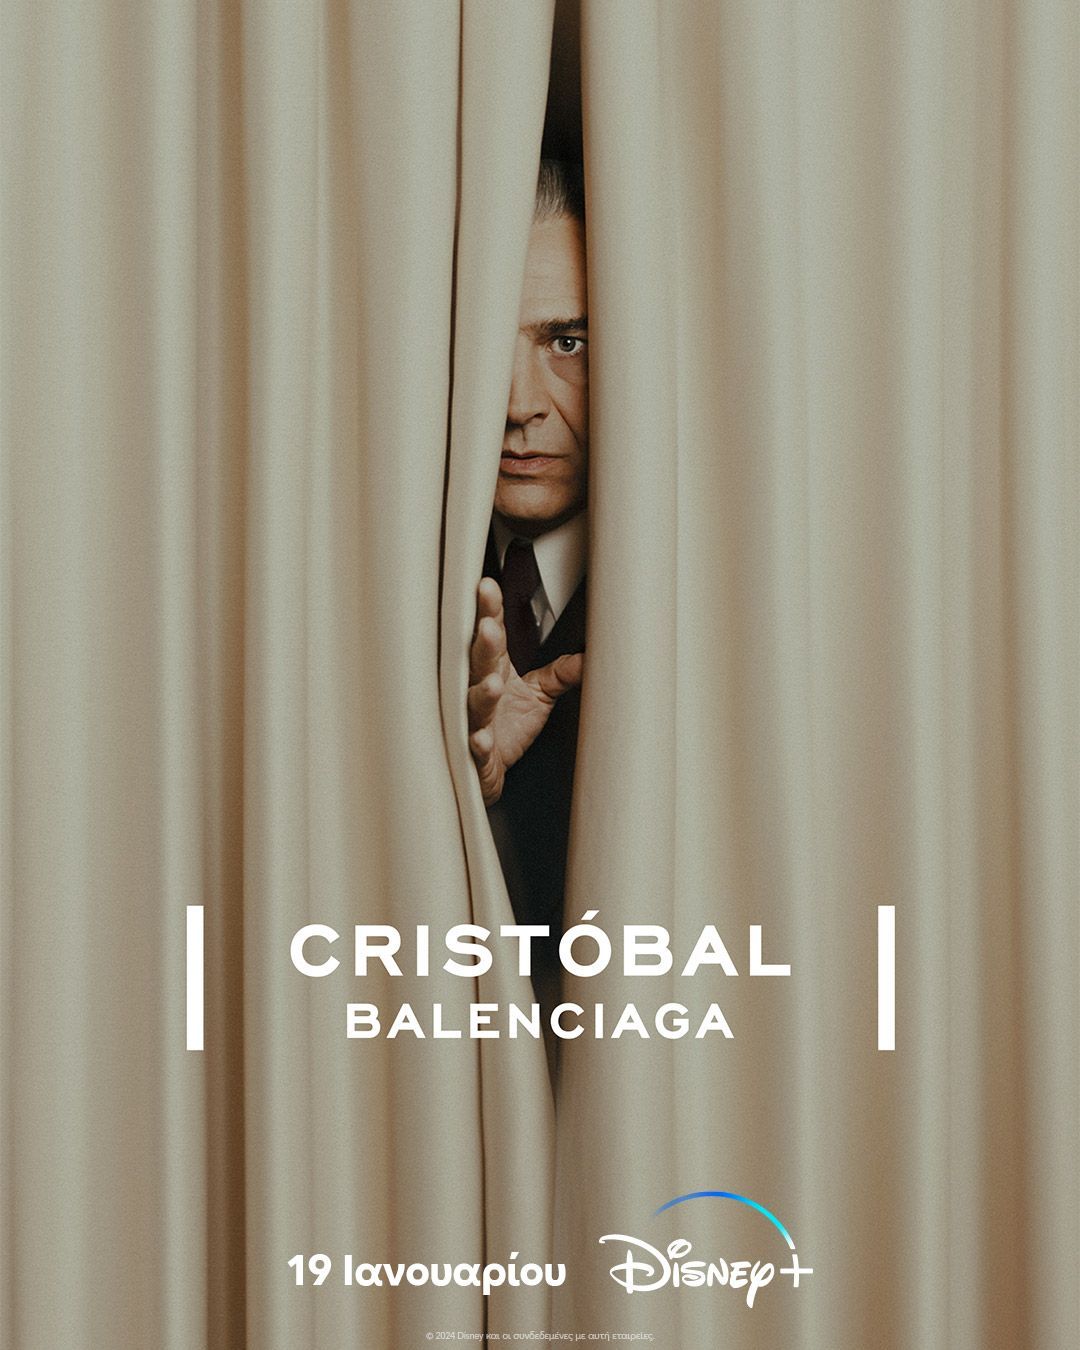 Cristóbal Balenciaga: Η πρωτότυπη σειρά που αξίζει να δεις τον Ιανουάριο στο Disney+